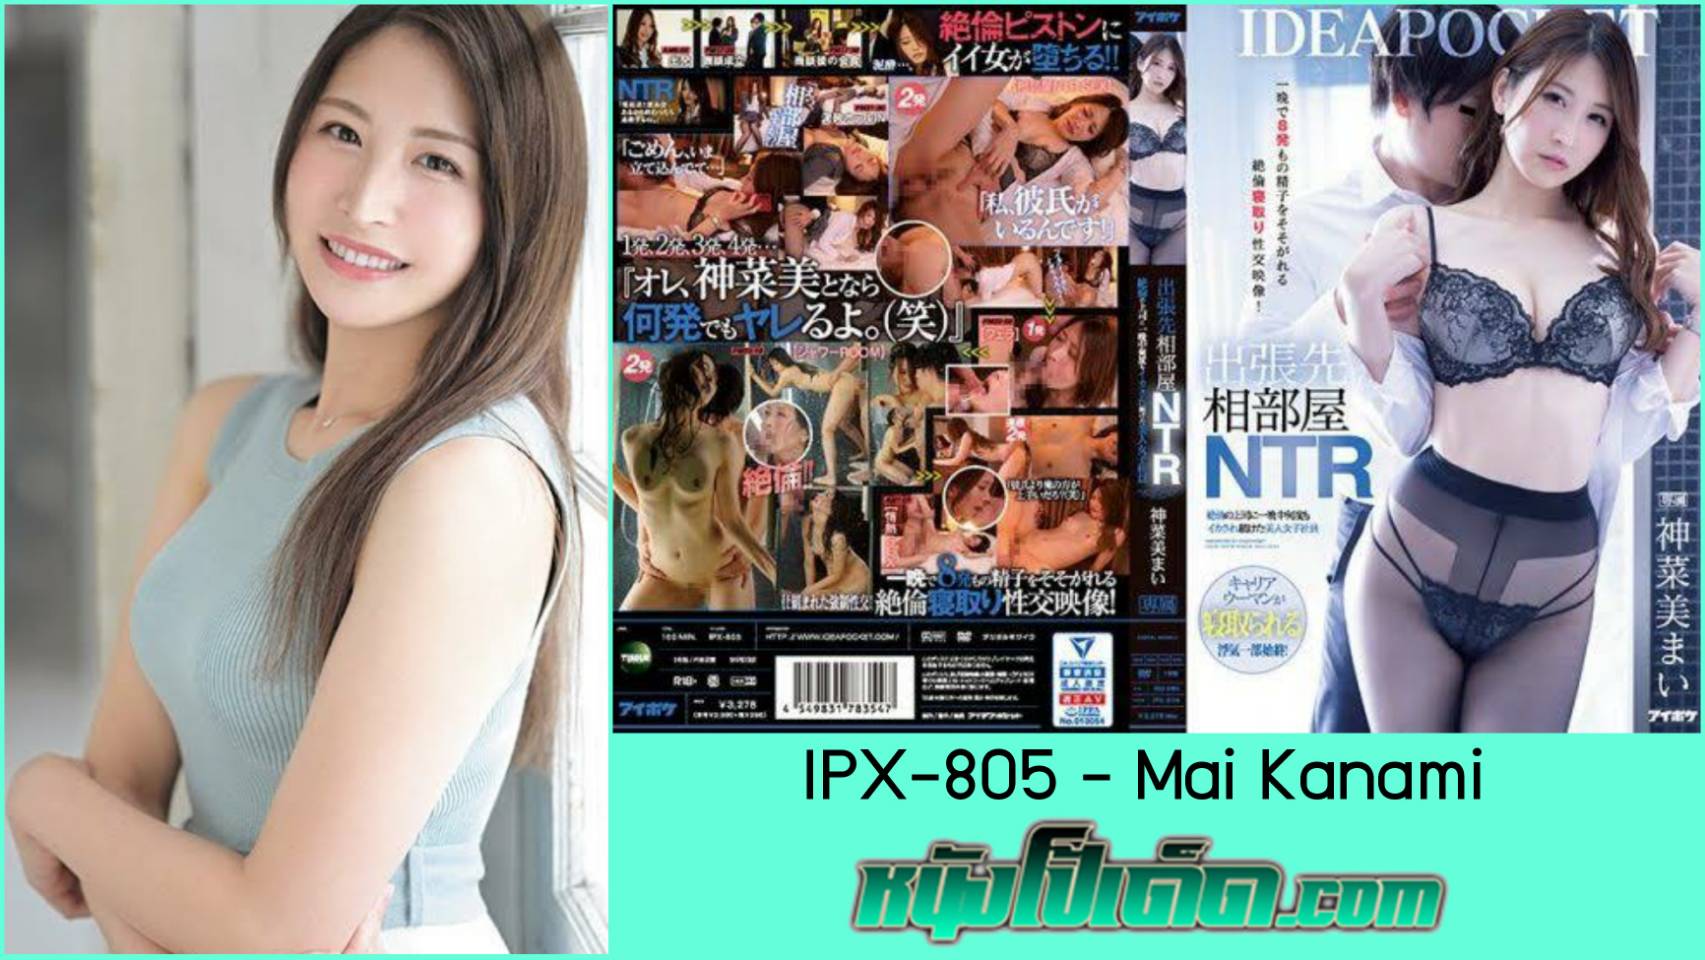 IPX-805 หนังโป๊ญี่ปุ่นเป็นเรื่อง Jav NTR เมียสาวสวยเล่นชู้กับบอสขี้เงี่ยน Mai Kanami (มาอิ คานามิ) ไปดื่มเหล้าจนเมาแล้วได้เอากัน เจ้านายแอบเย็ดลูกน้องหลังดื่มฉลองเสร็จ